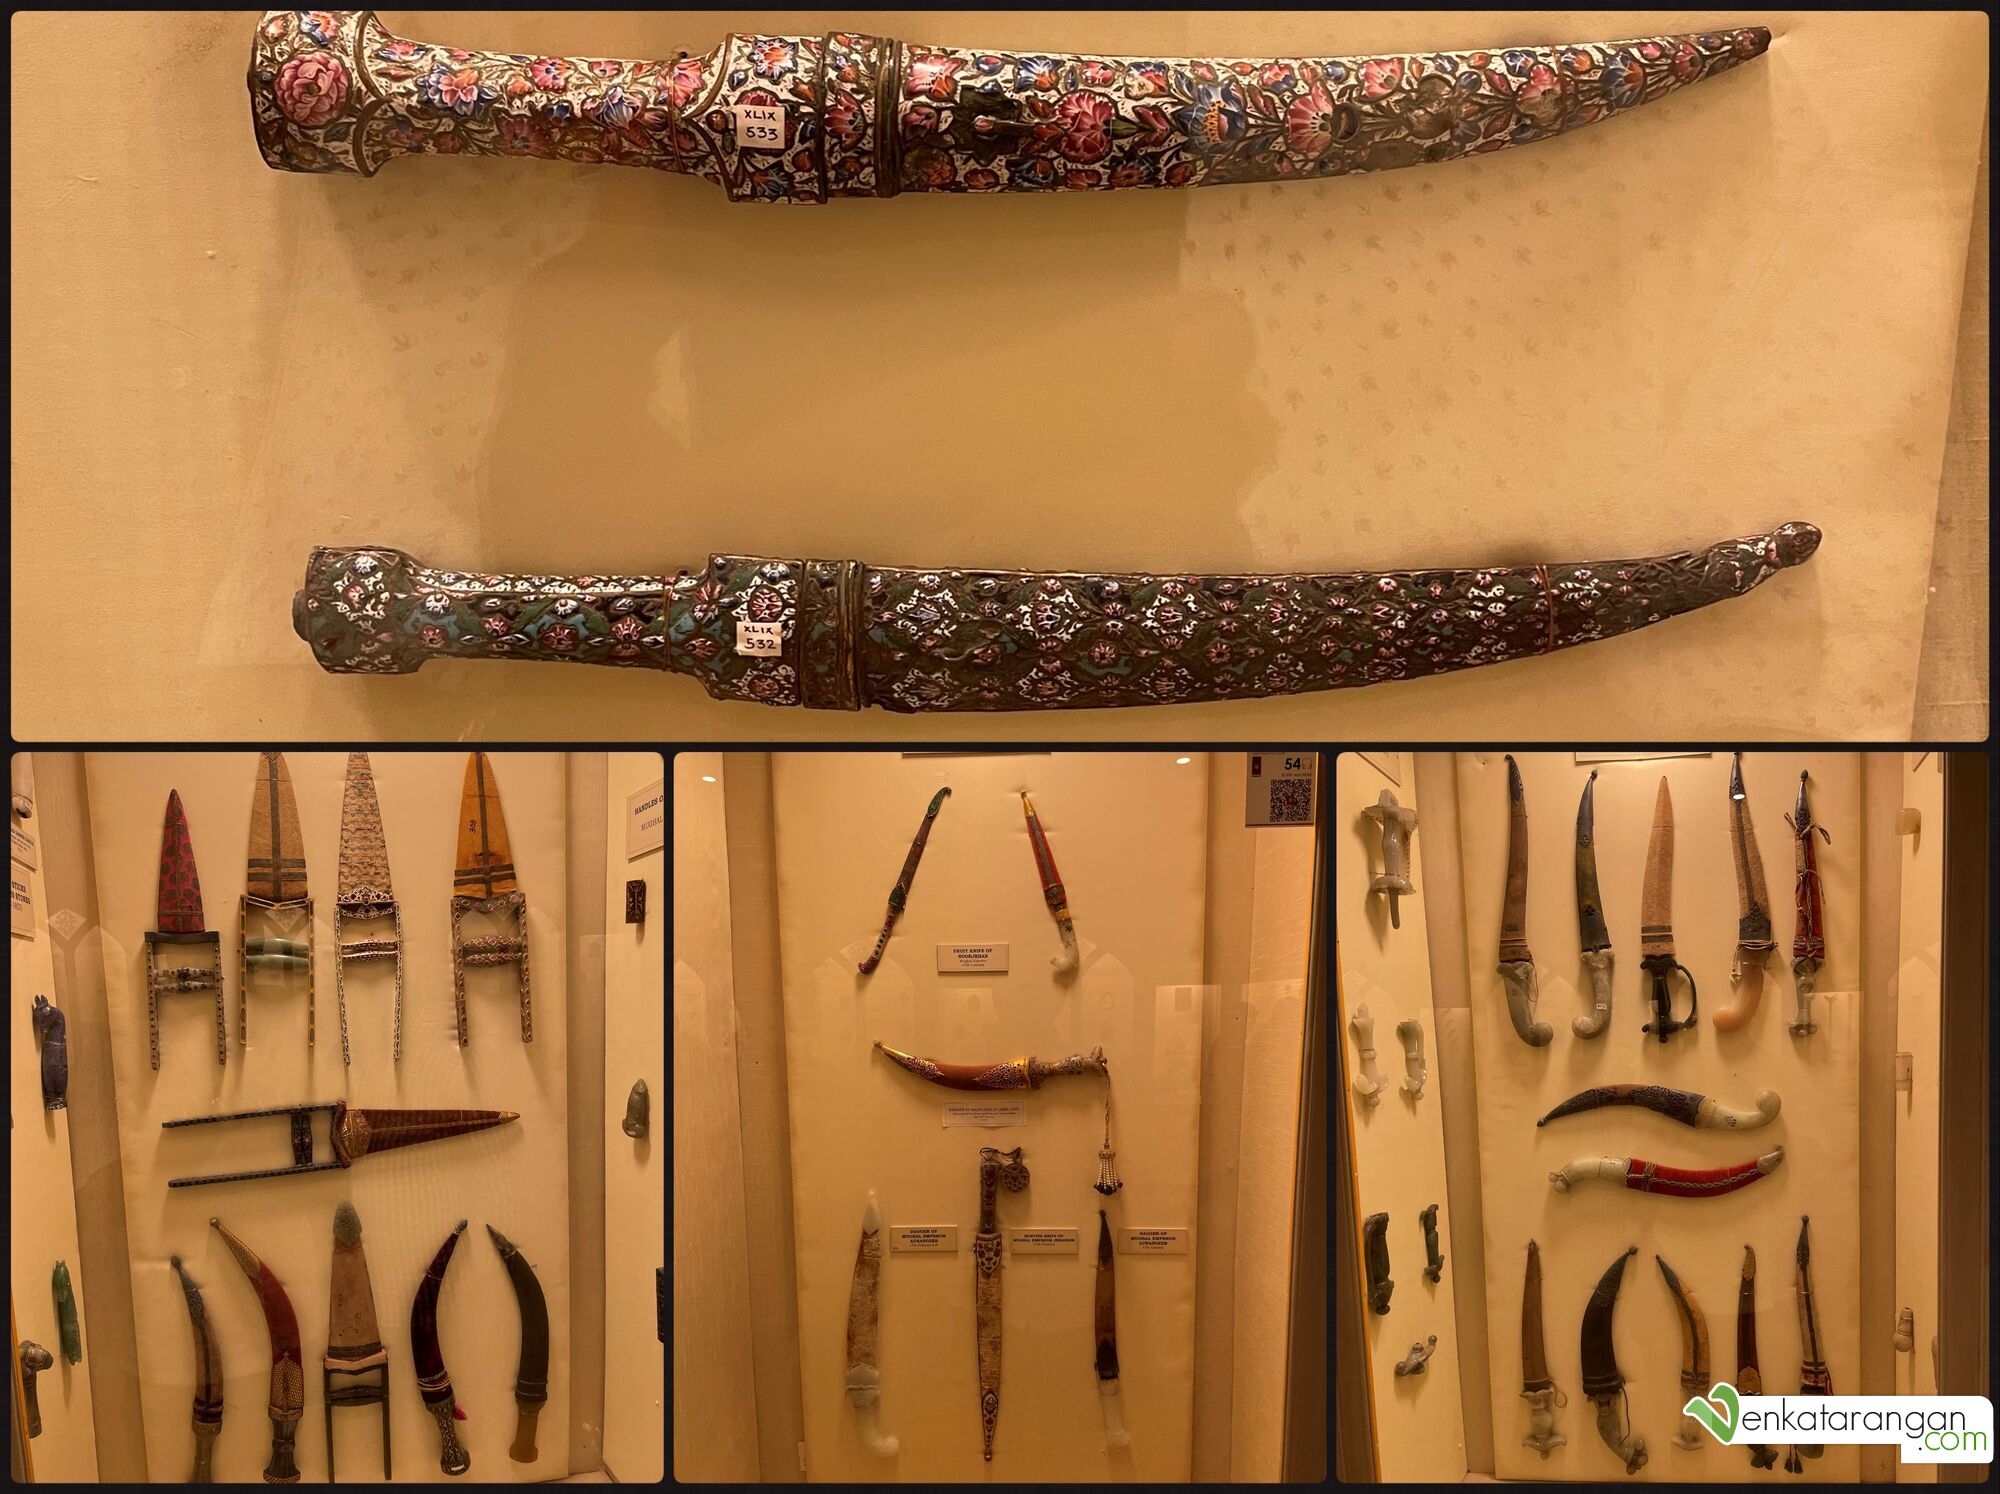 Decorative Daggers in Jade hilts, Mughal era daggers